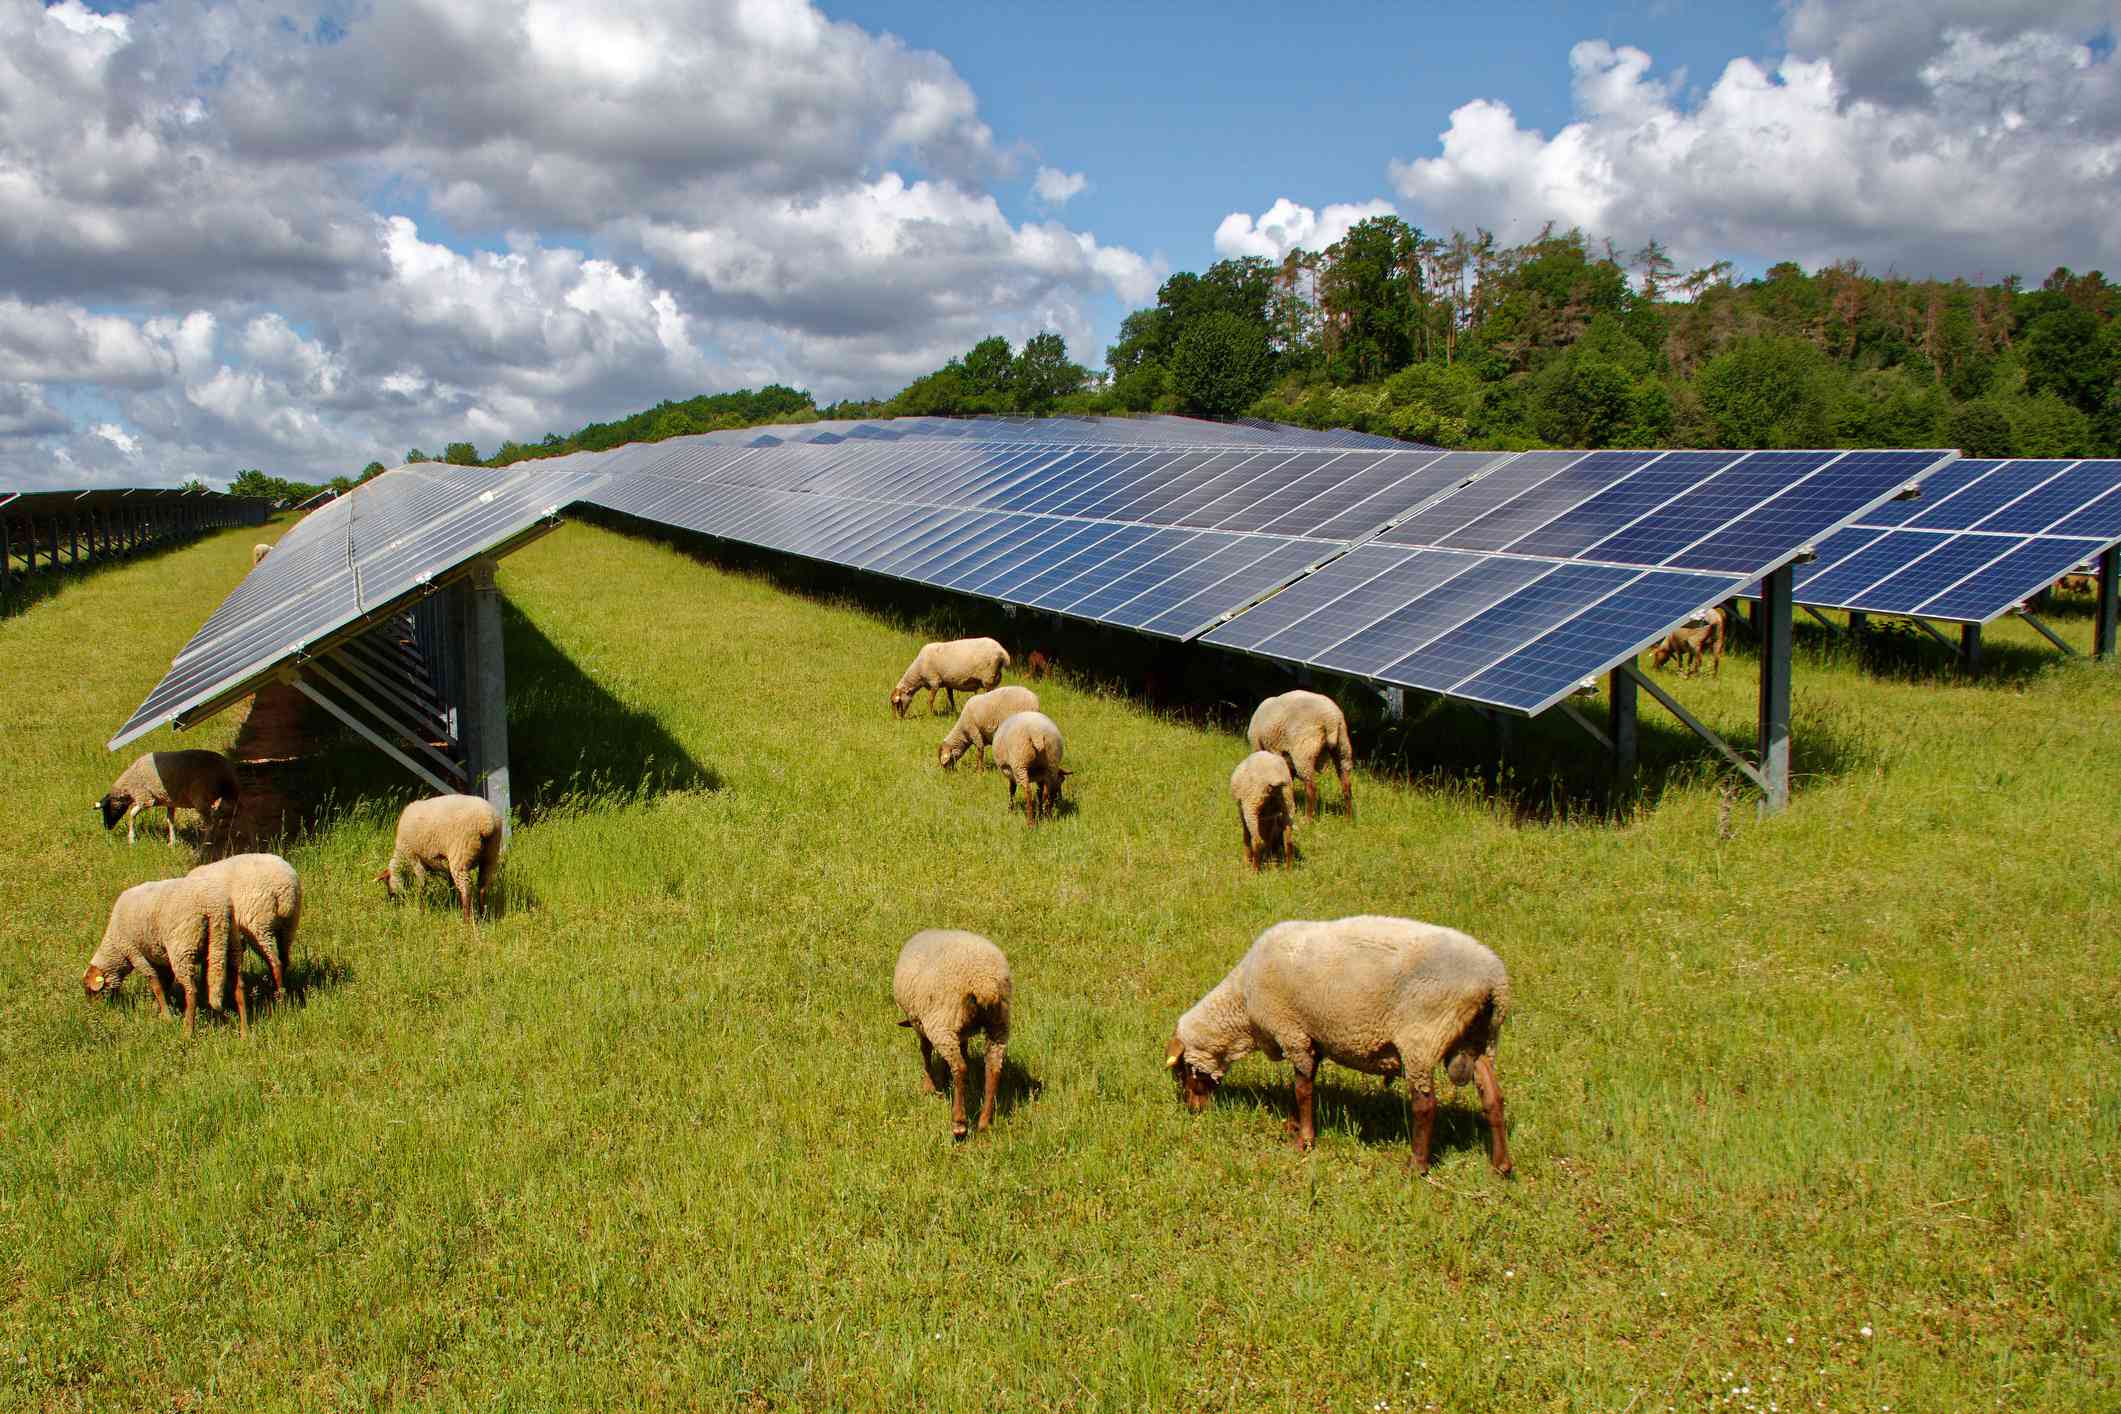 Las ovejas pastan alrededor y debajo de una granja solar